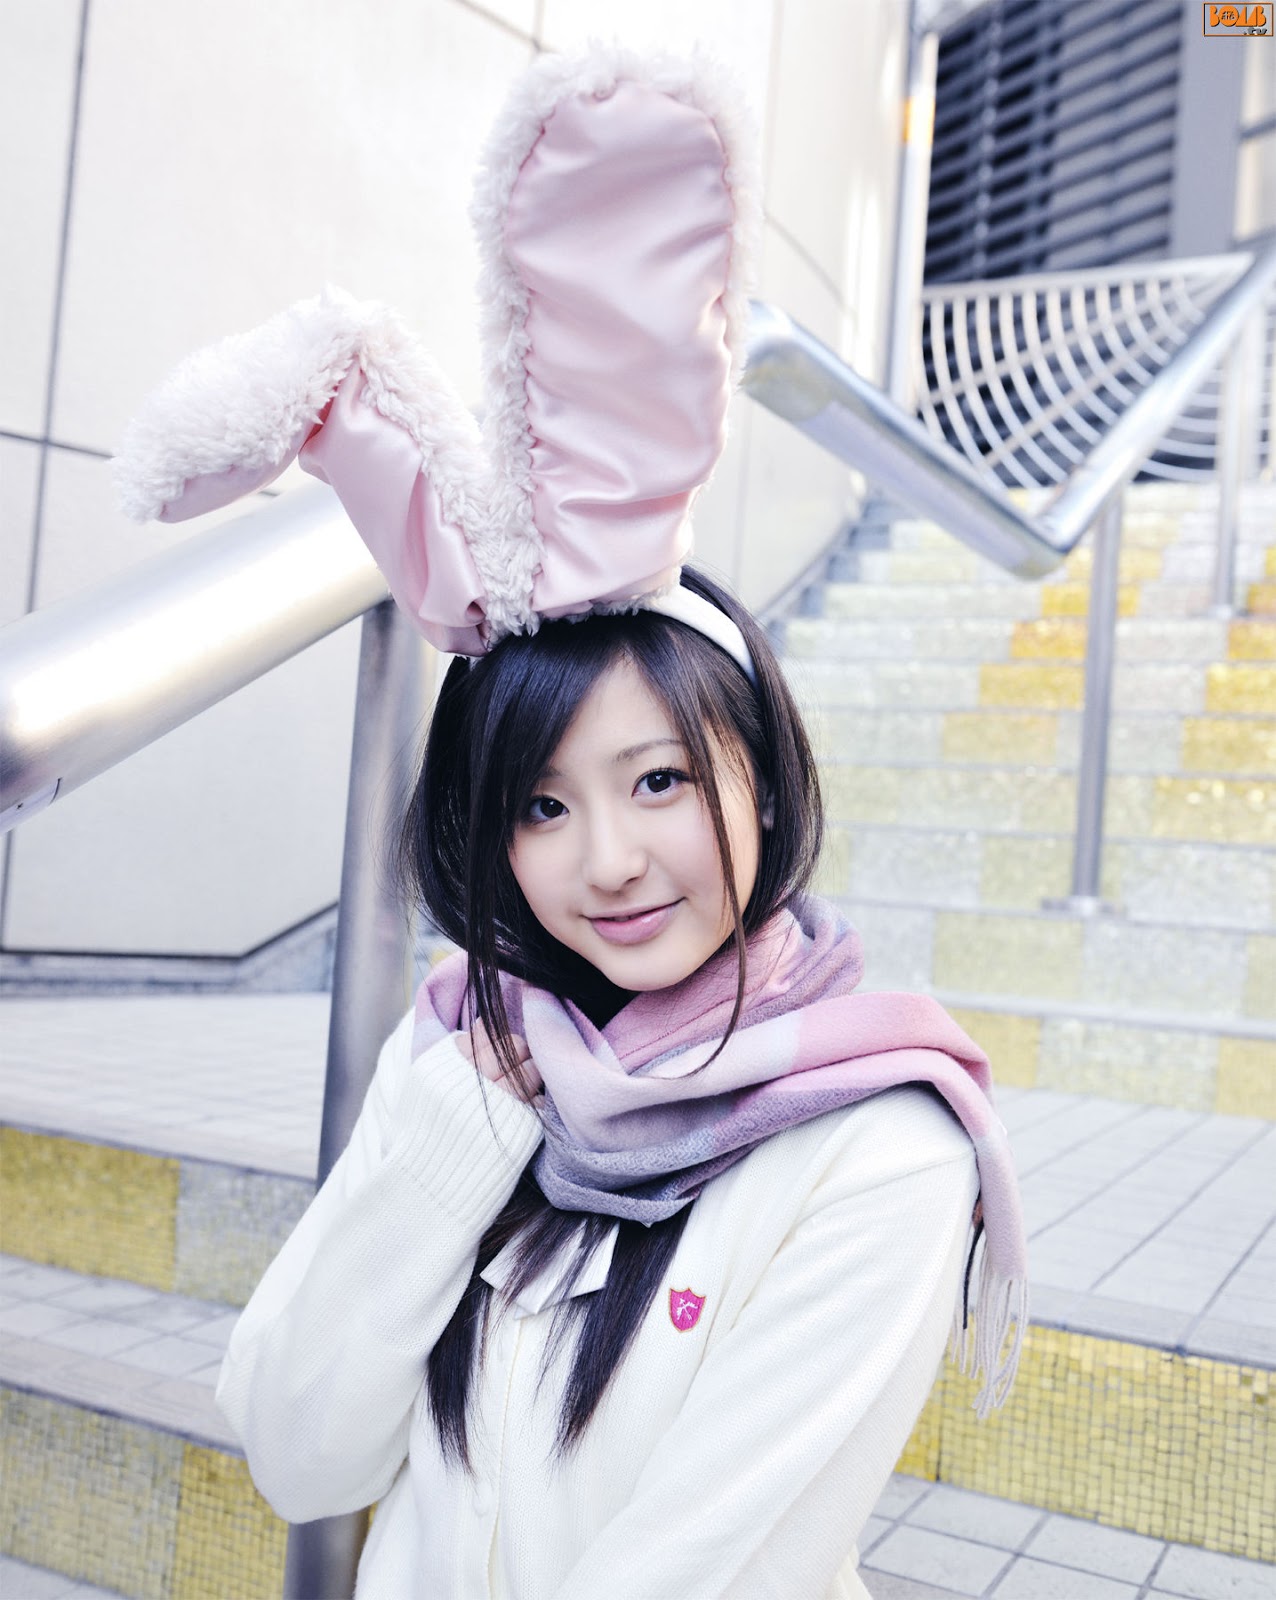 Mimi girl. Красивая японка в новогоднем костюме и кроличьими ушками.